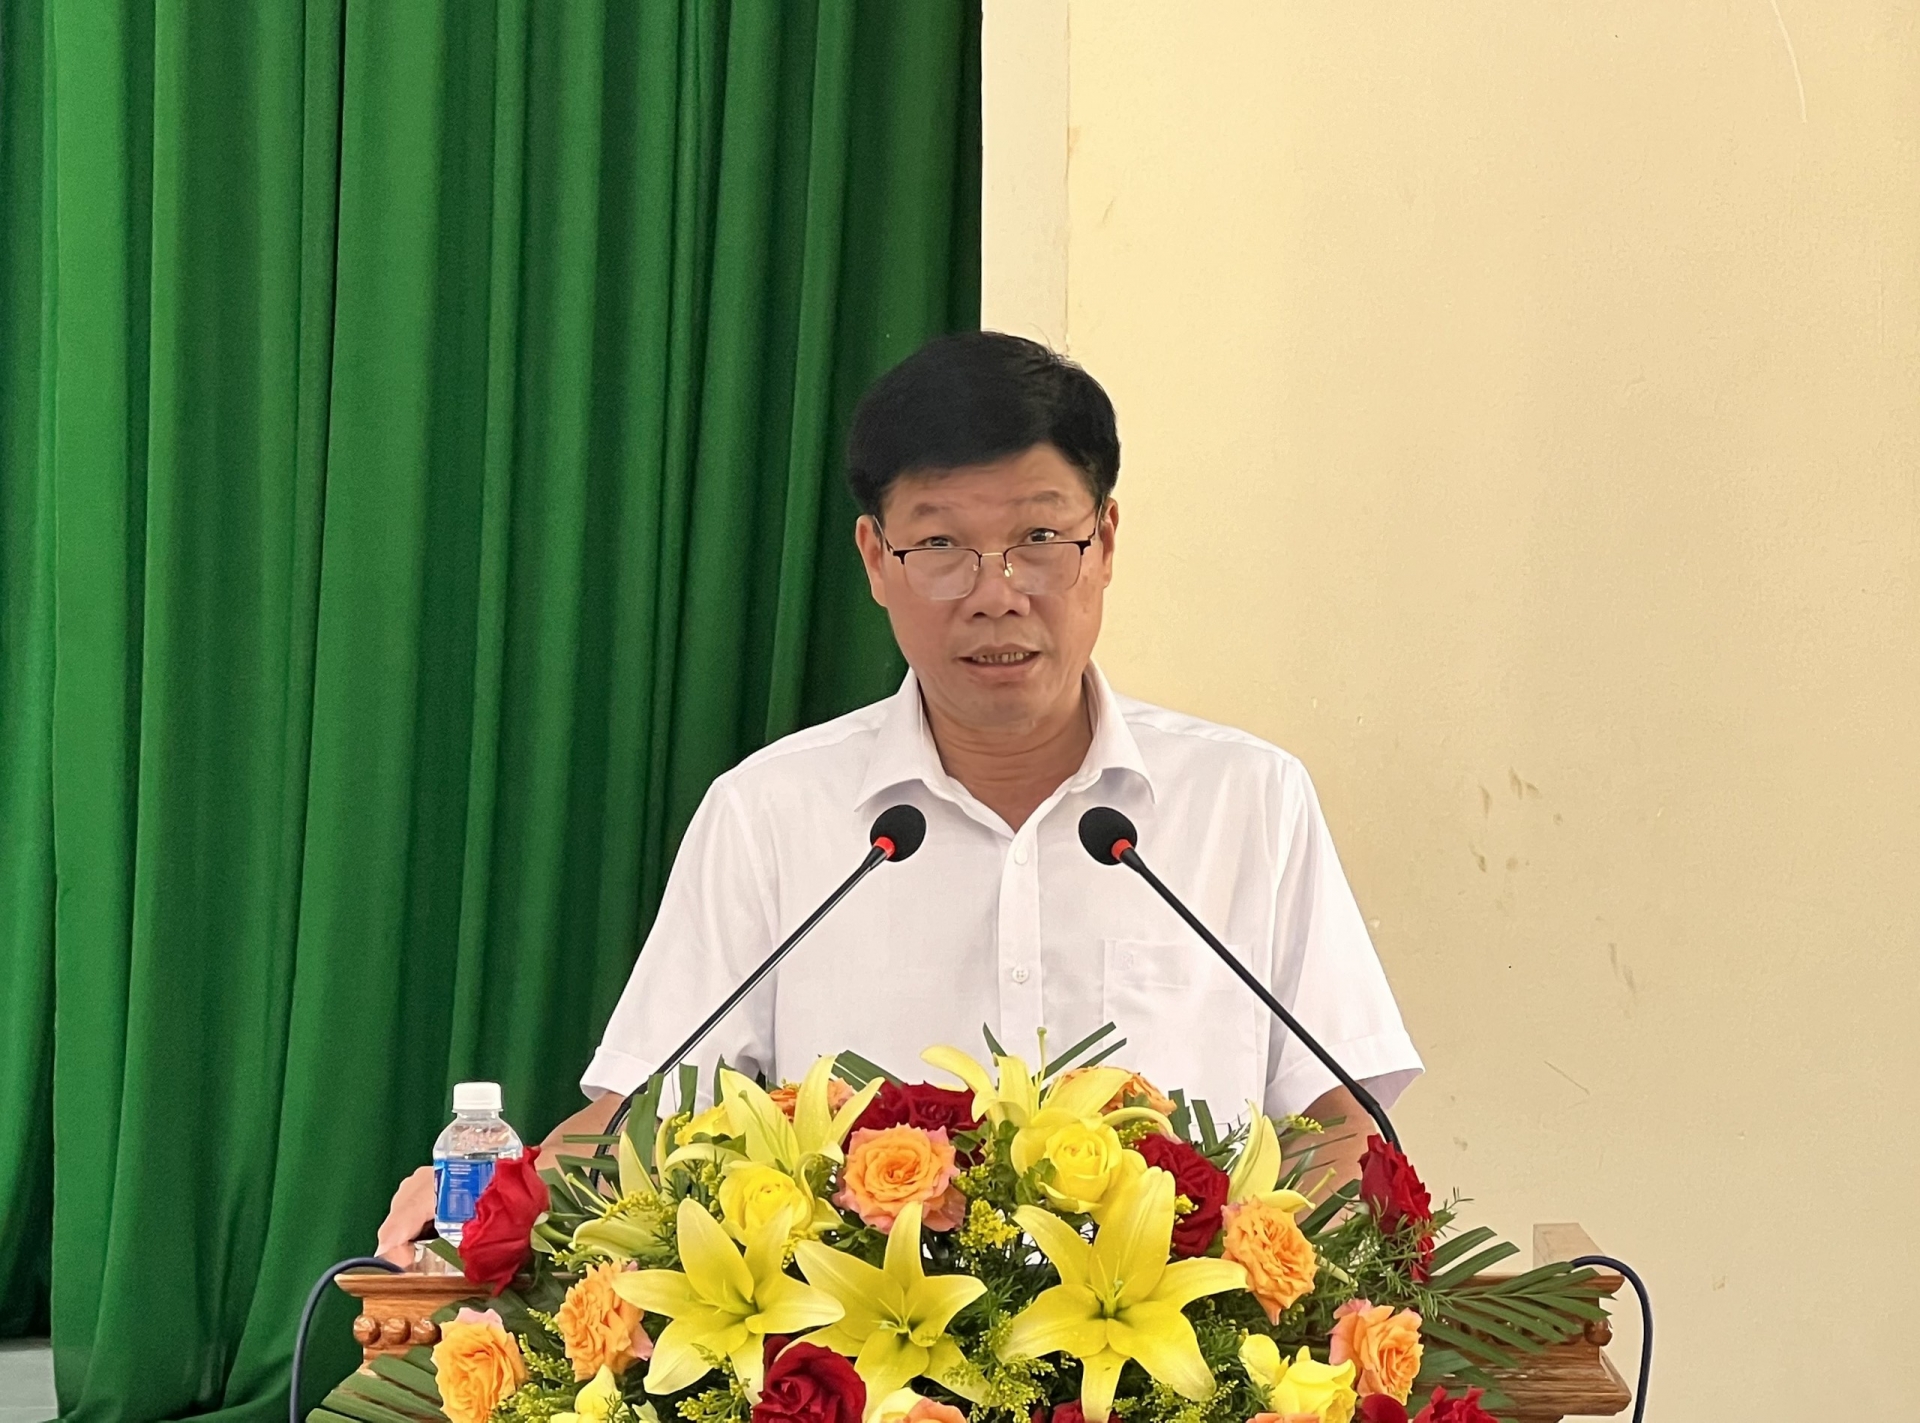 Đồng chí Nguyễn Văn Tân - Phó Bí thư Thường trực Huyện ủy Lâm Hà phát biểu tại hội nghị